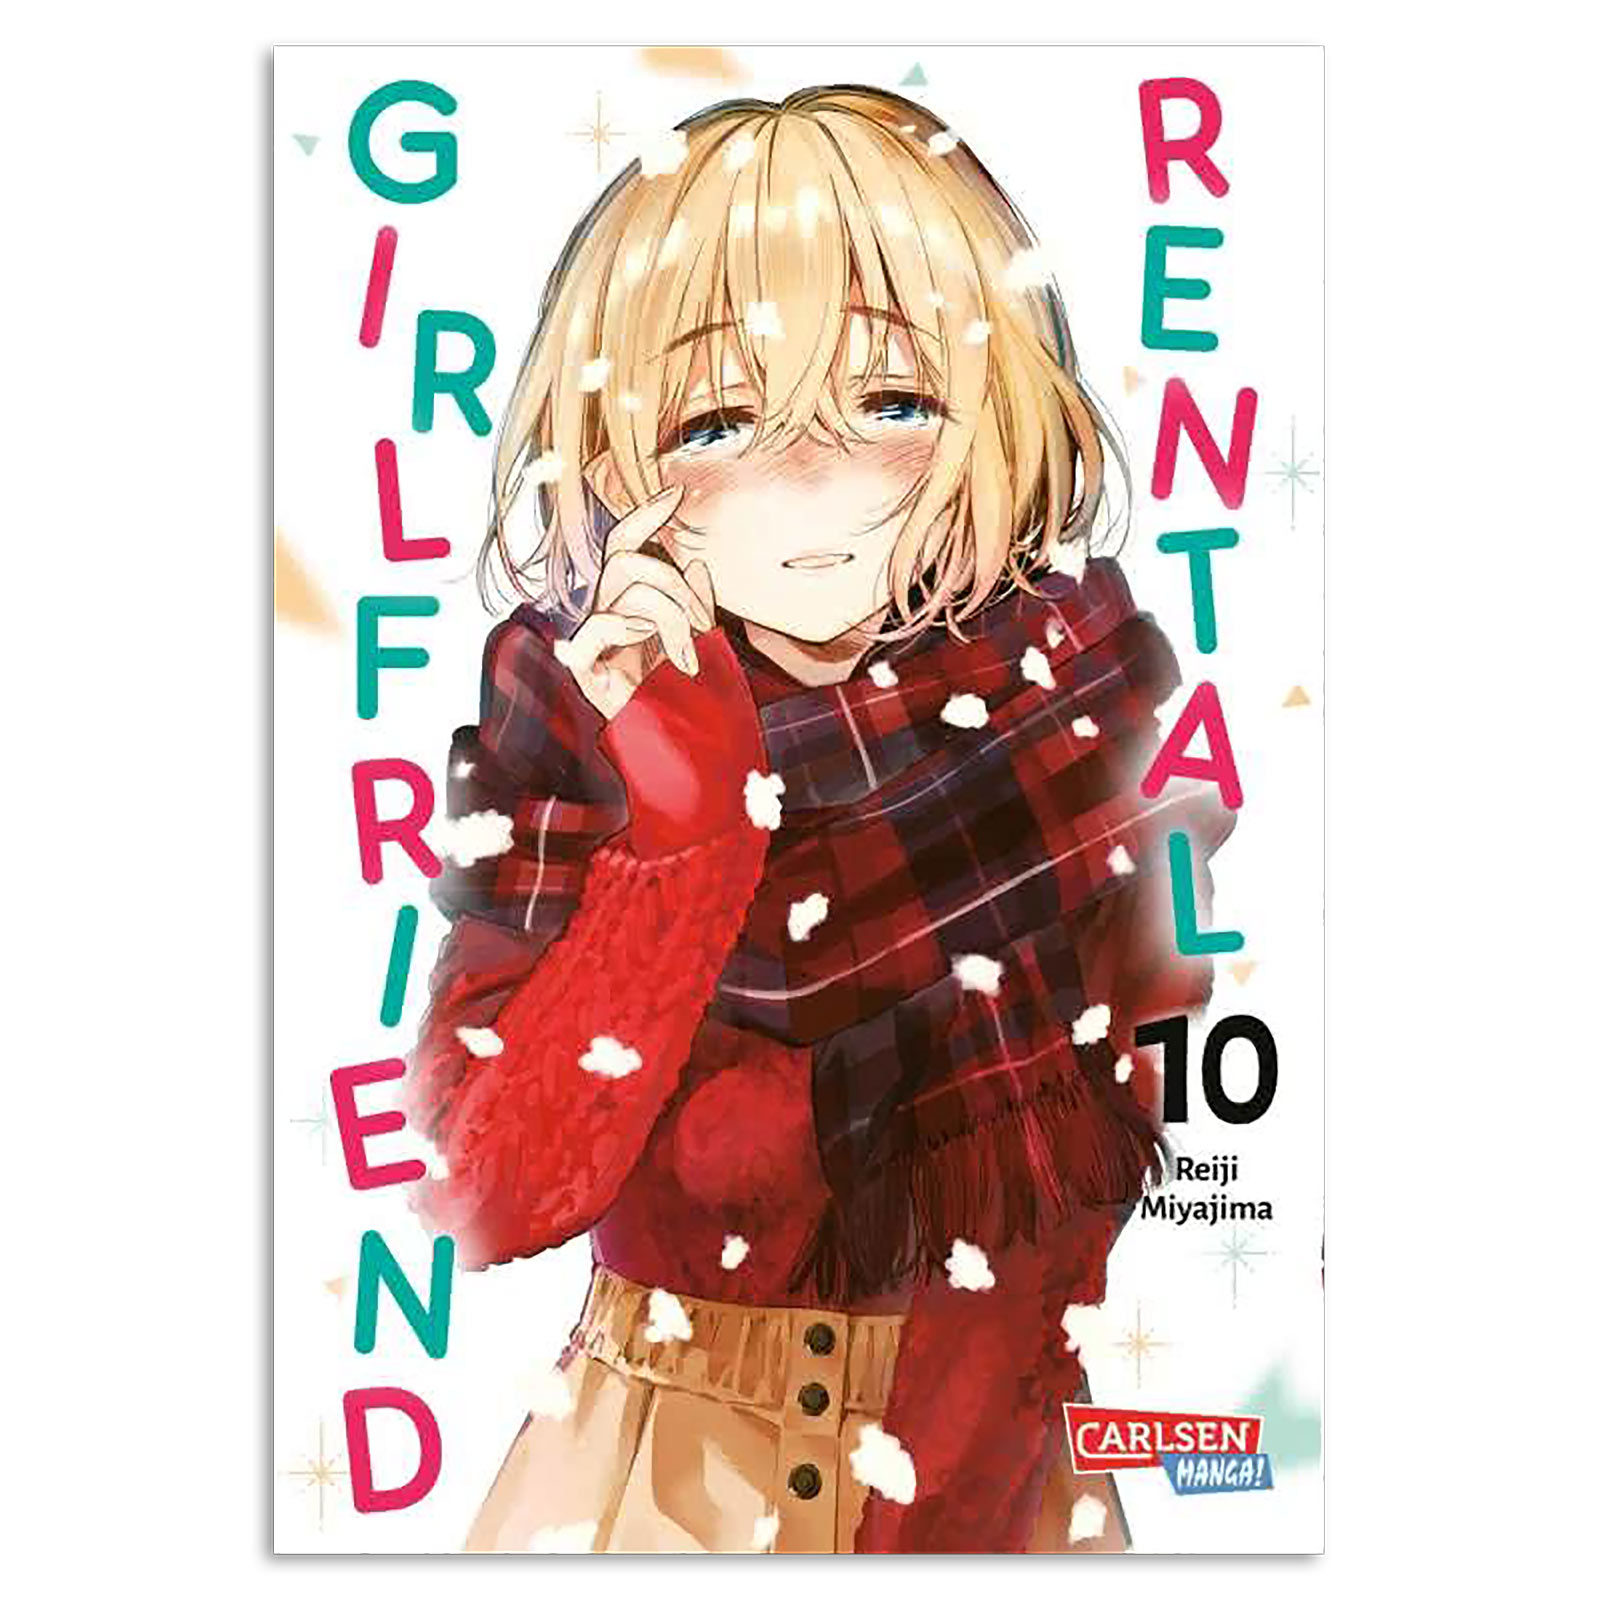 Rental Girlfriend - Volume 10 Paperback